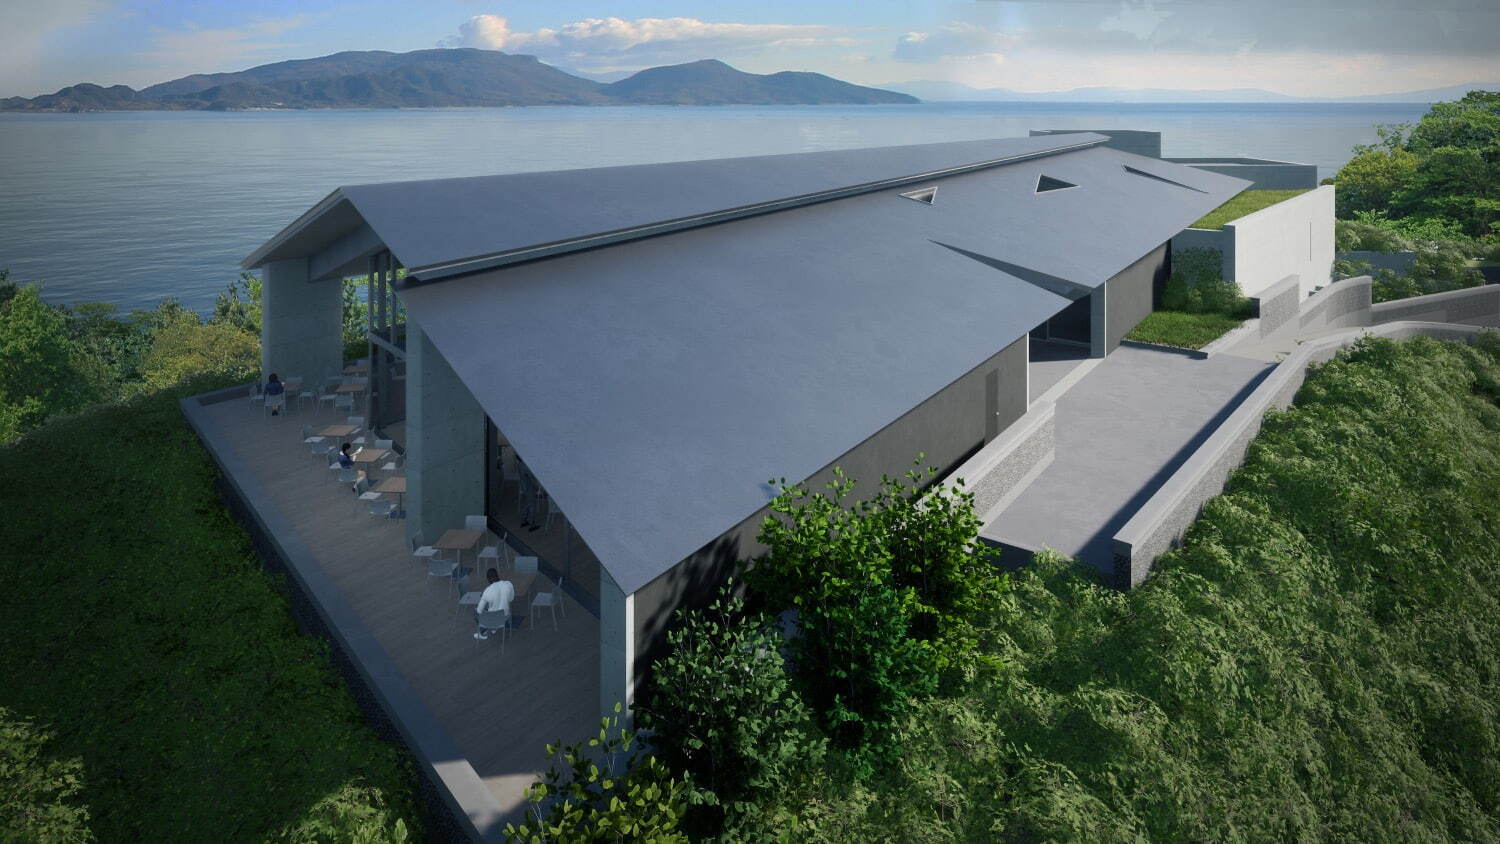 ベネッセアートサイト直島に新美術館「直島新美術館(仮称)」2025年春に